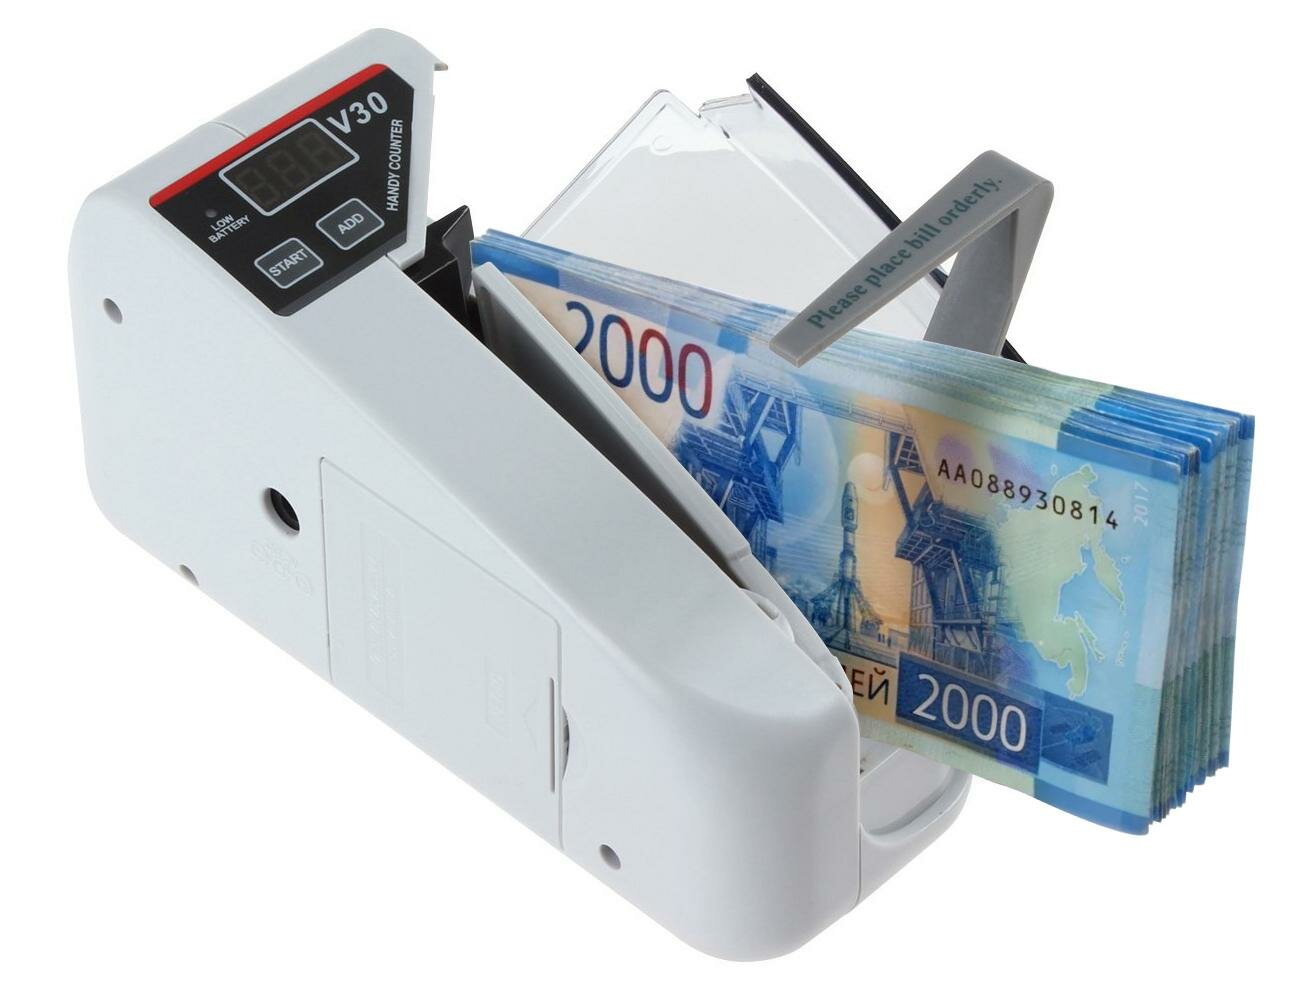 ДОЛС-V30 (W17294PO) - портативная счетная машинка для денег - машинка для купюр, машинка для счета купюр, счетная машинка для купюр